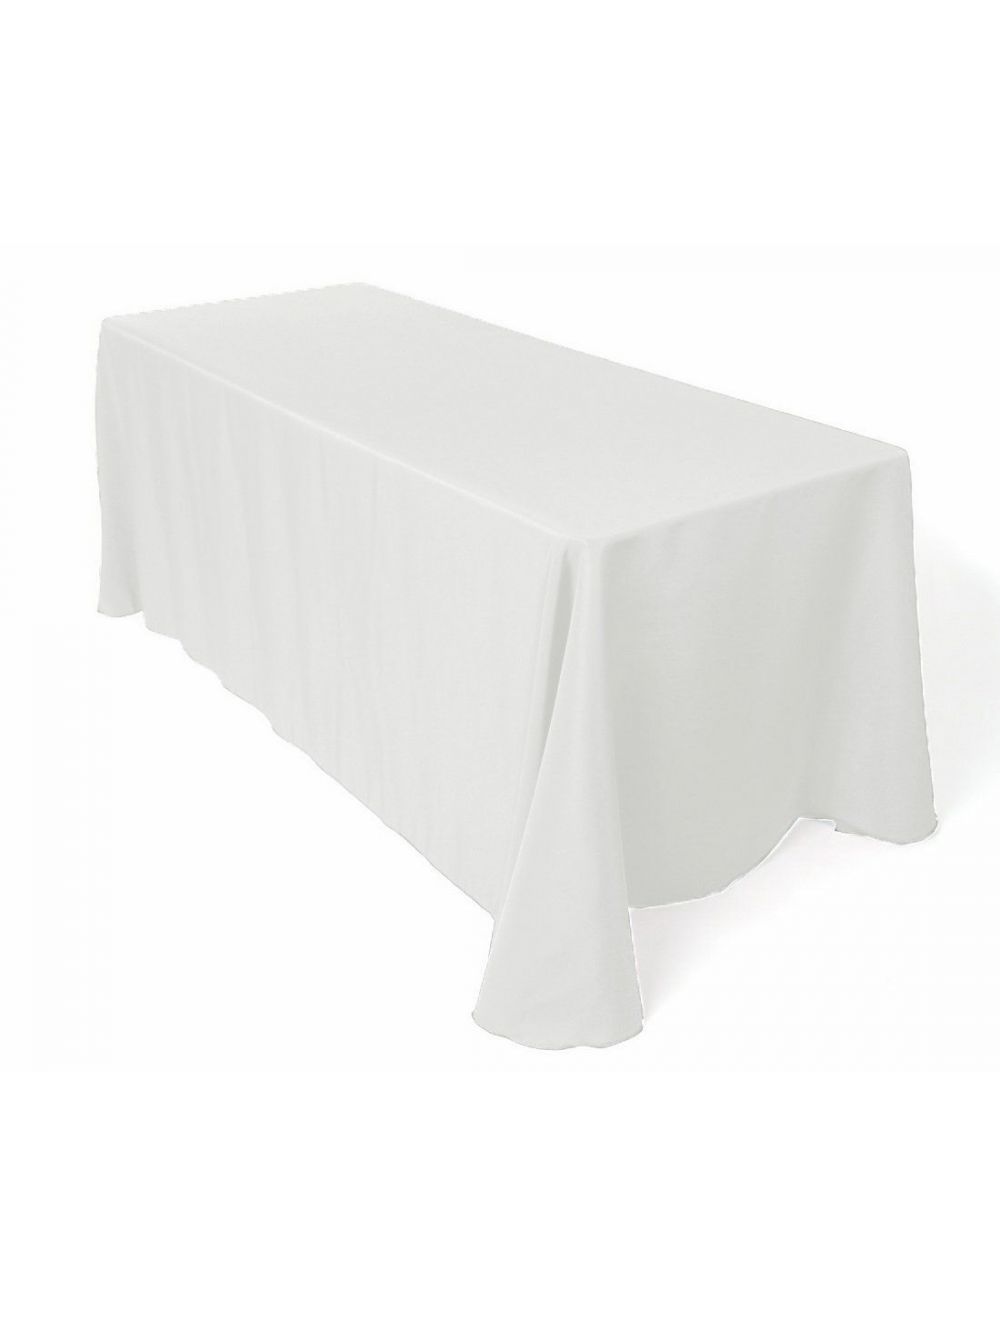 8 Floor Length White Table Linen